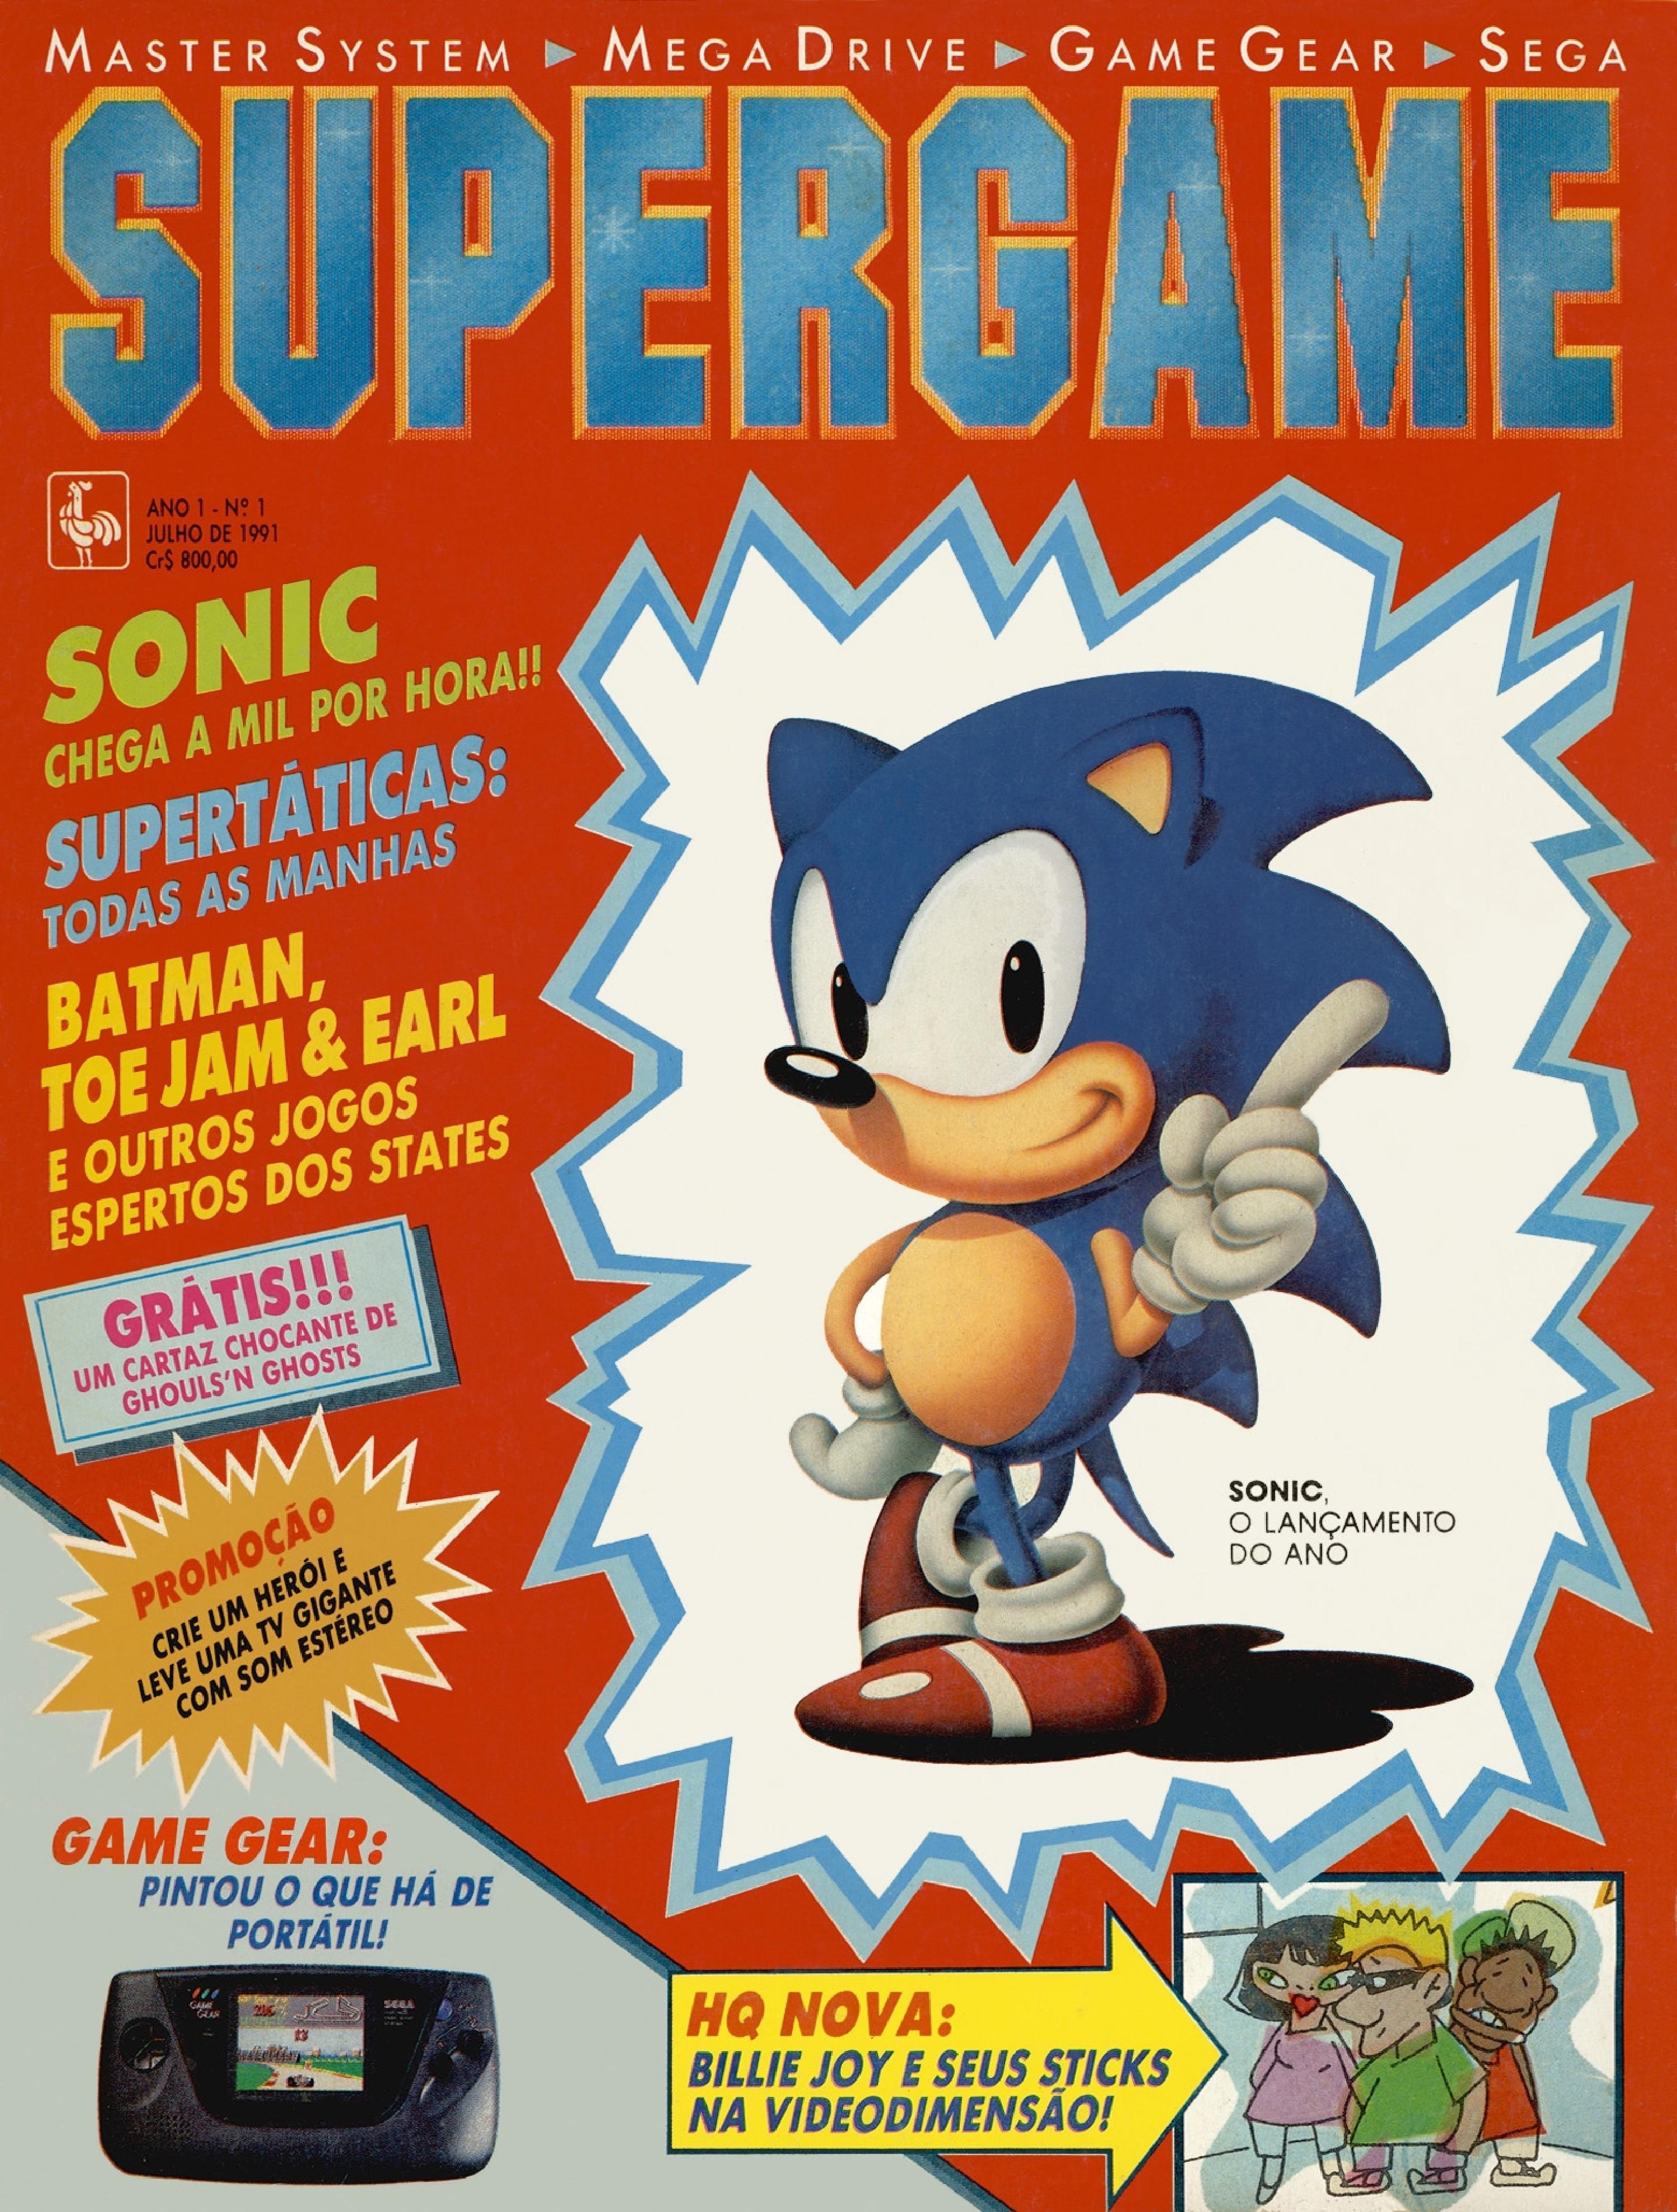 Usado: Jogo Sonic the Hedgehog - Master System em Promoção na